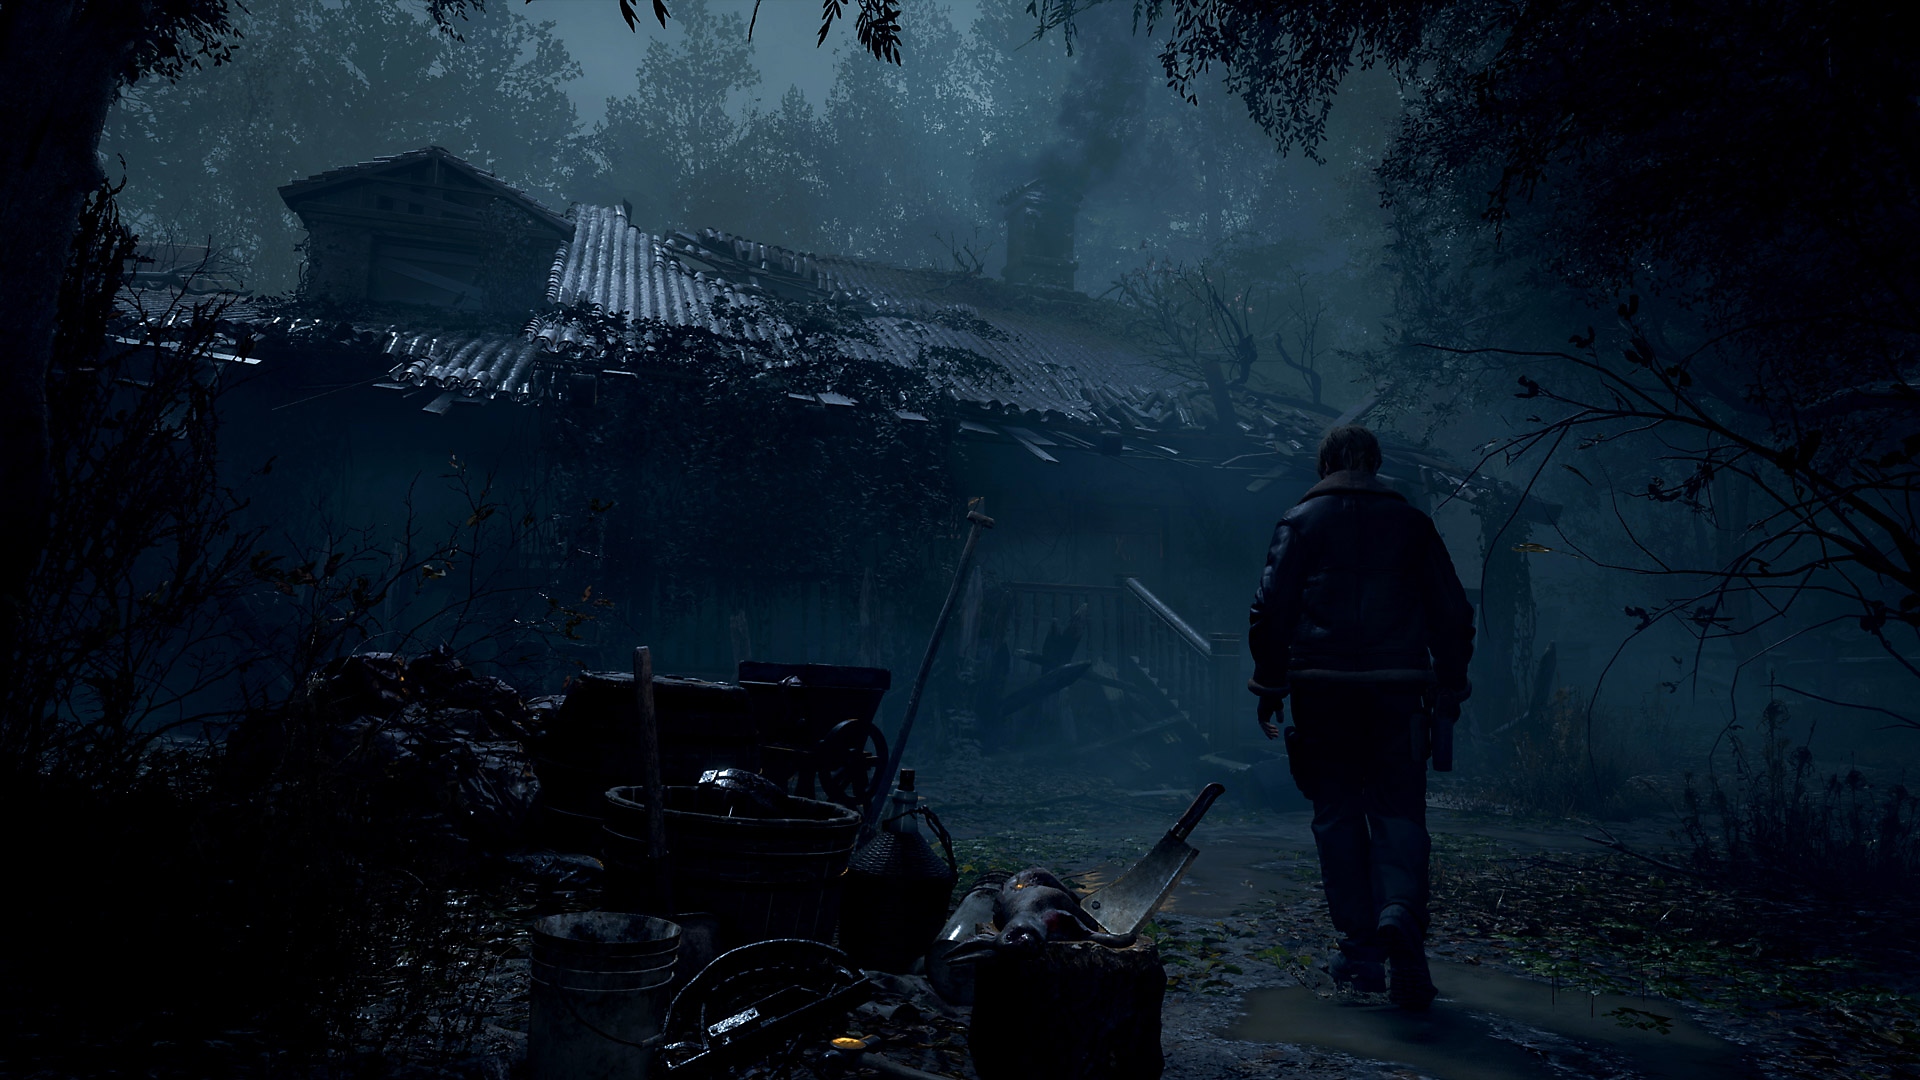 Captura de pantalla de Resident Evil 4 que muestra a Leon Kennedy acercándose a una vivienda rural en ruinas.